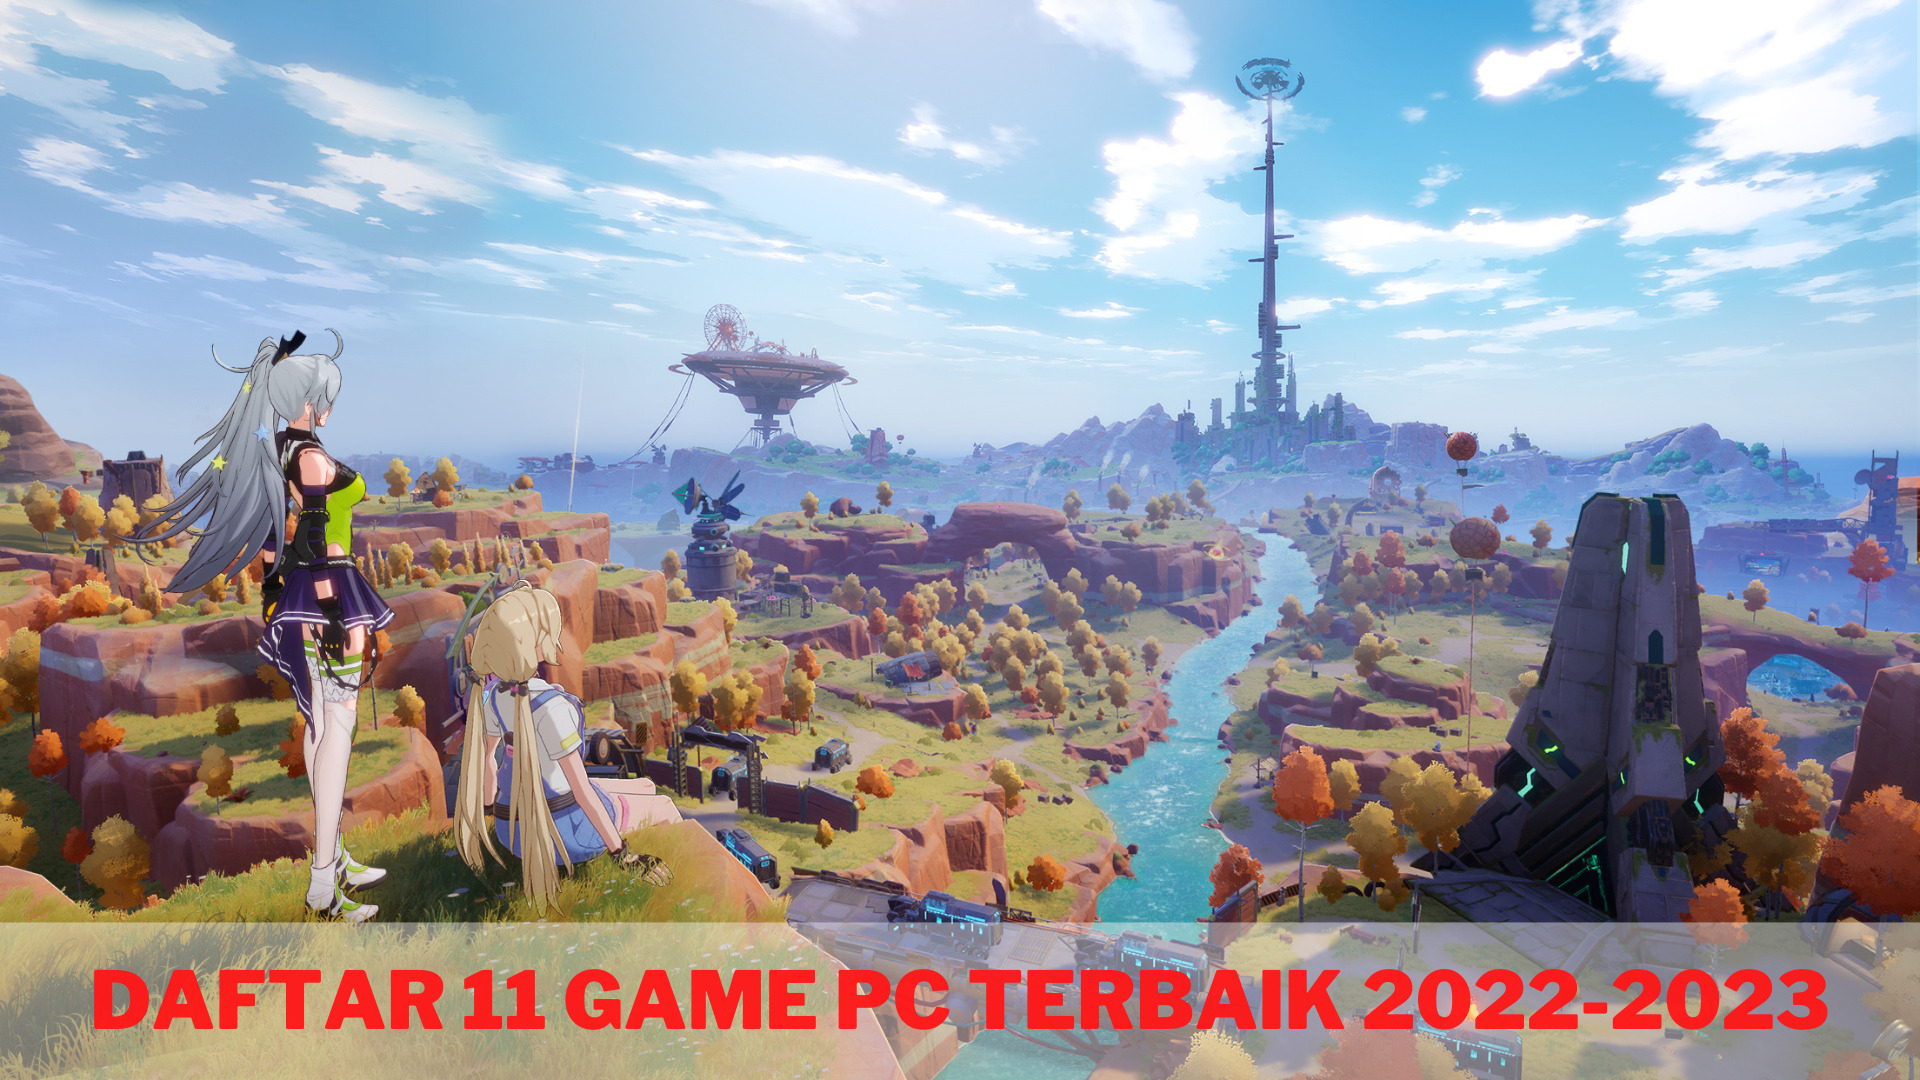 Daftar 11 Game PC Terbaik 2022-2023